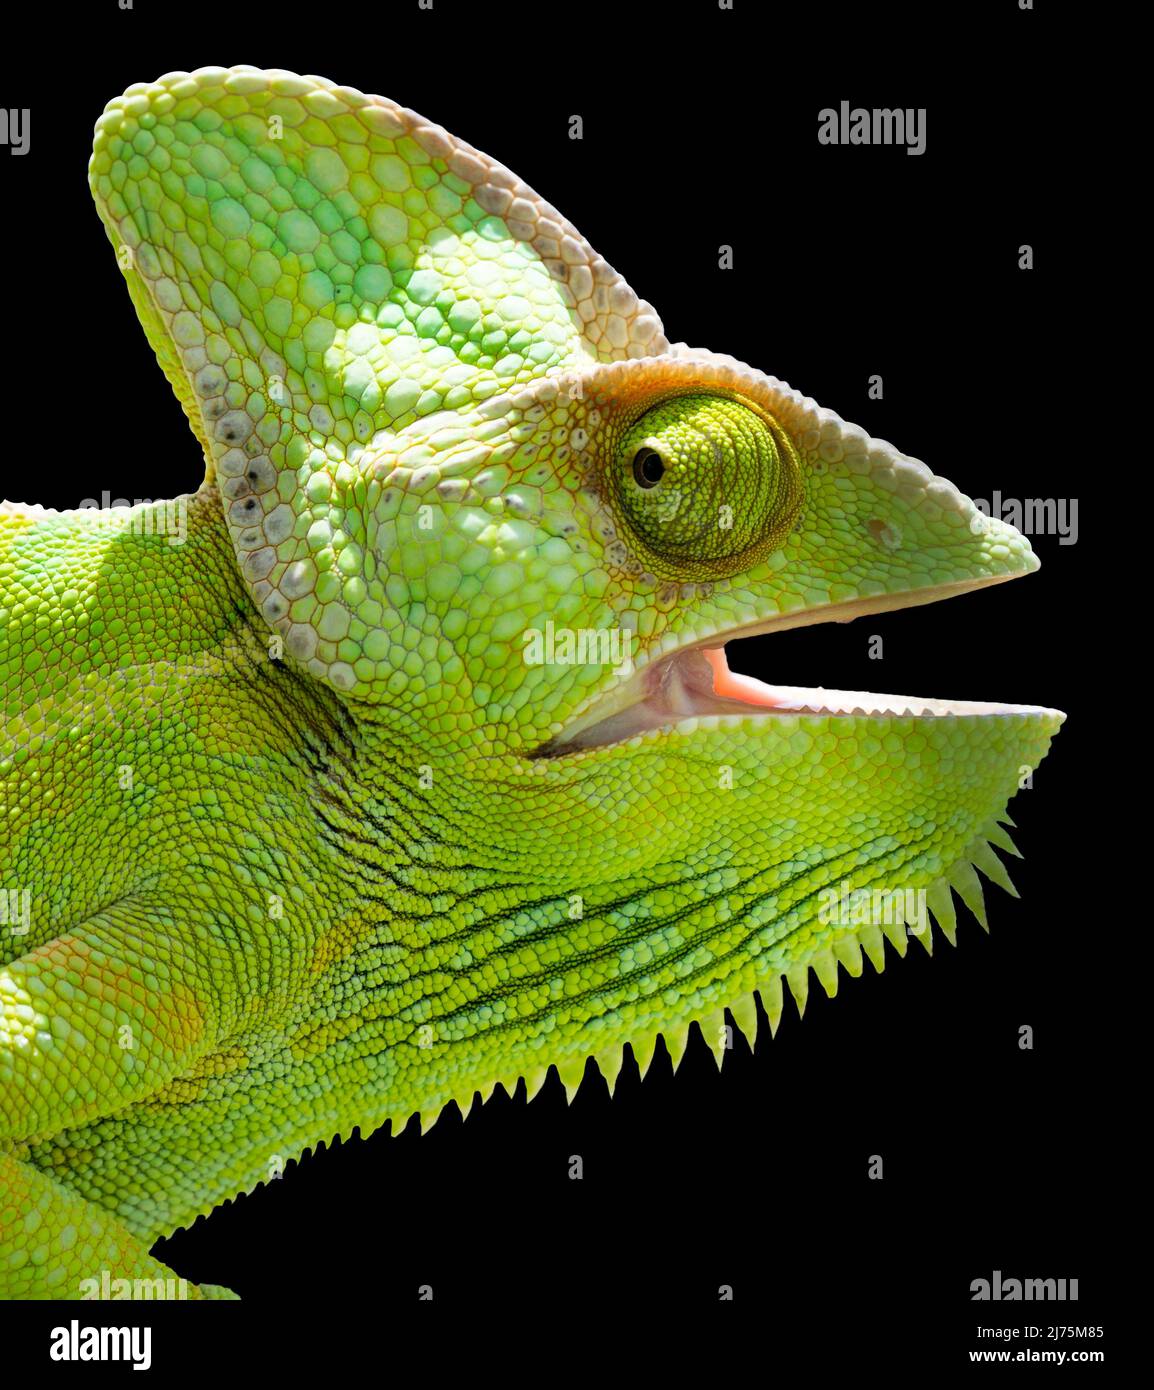 Chameleon-Kopf isoliert. Schwarzer Hintergrund. Weibliches Jemen-Chamäleon mit offenem Mund und Blick nach vorne. Stockfoto